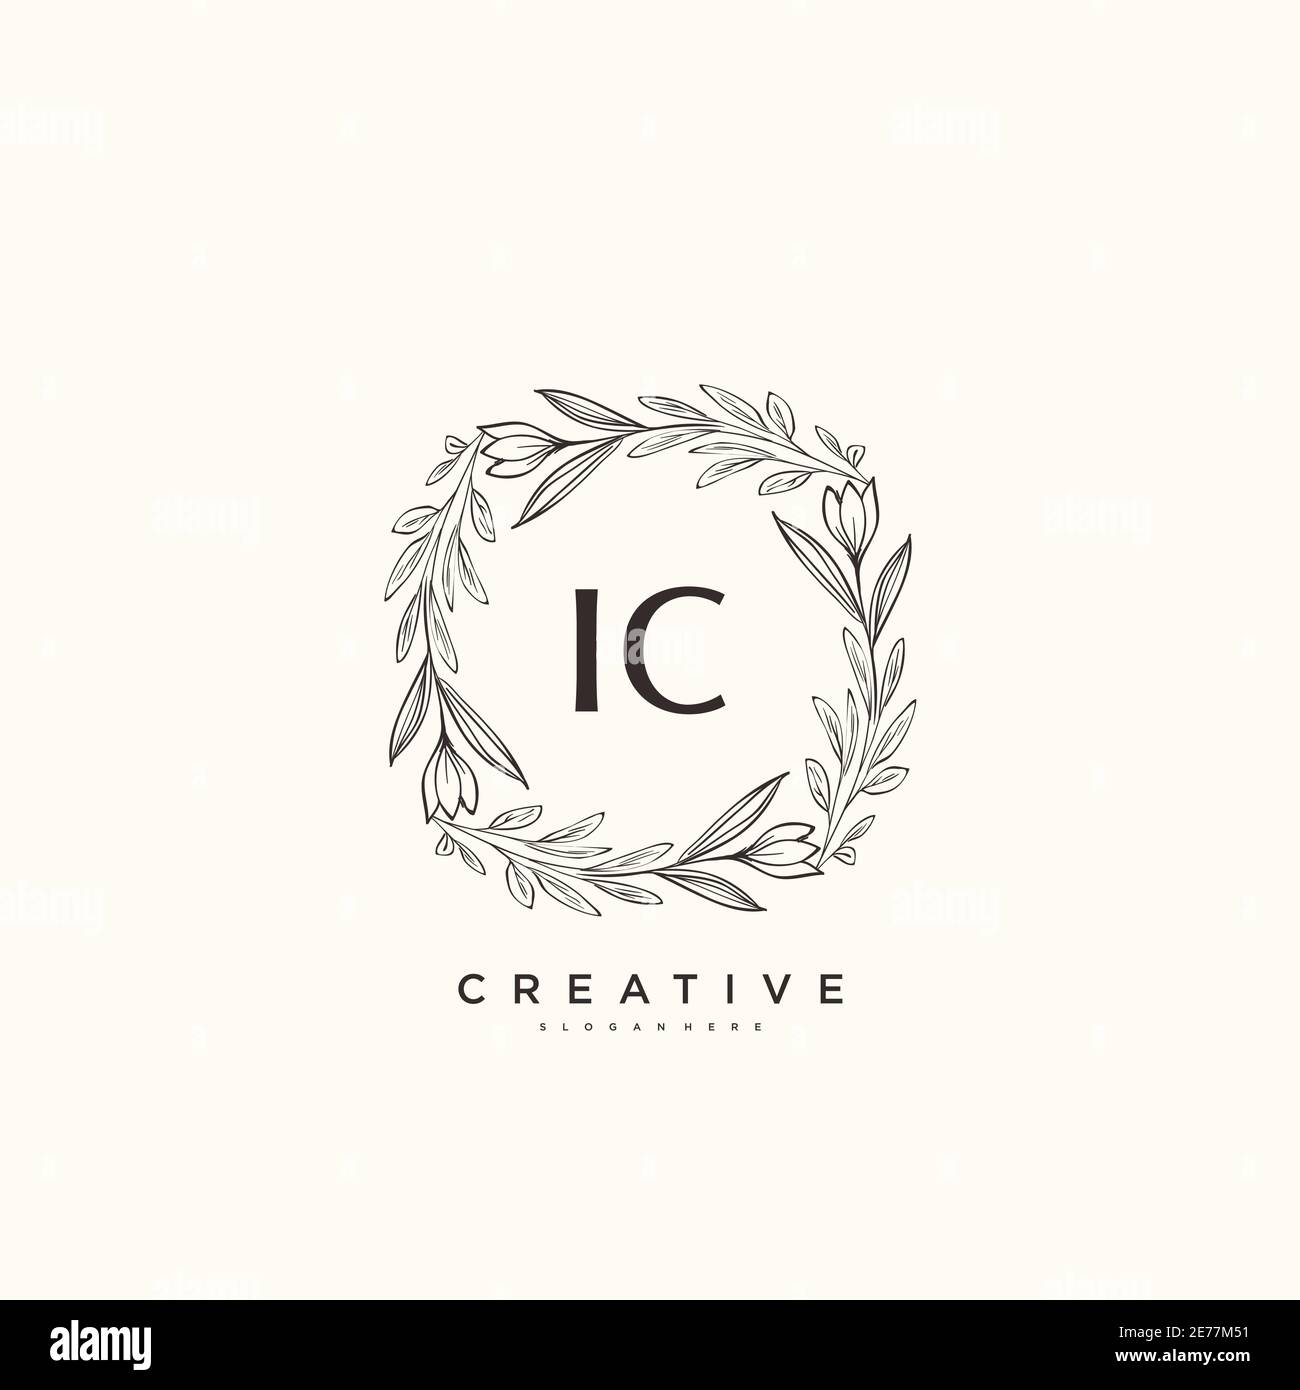 IC Beauty vector logo initial art, écriture logo de signature initiale, mariage, mode, joaillierly, boutique, floral et botanique avec la température créative Illustration de Vecteur